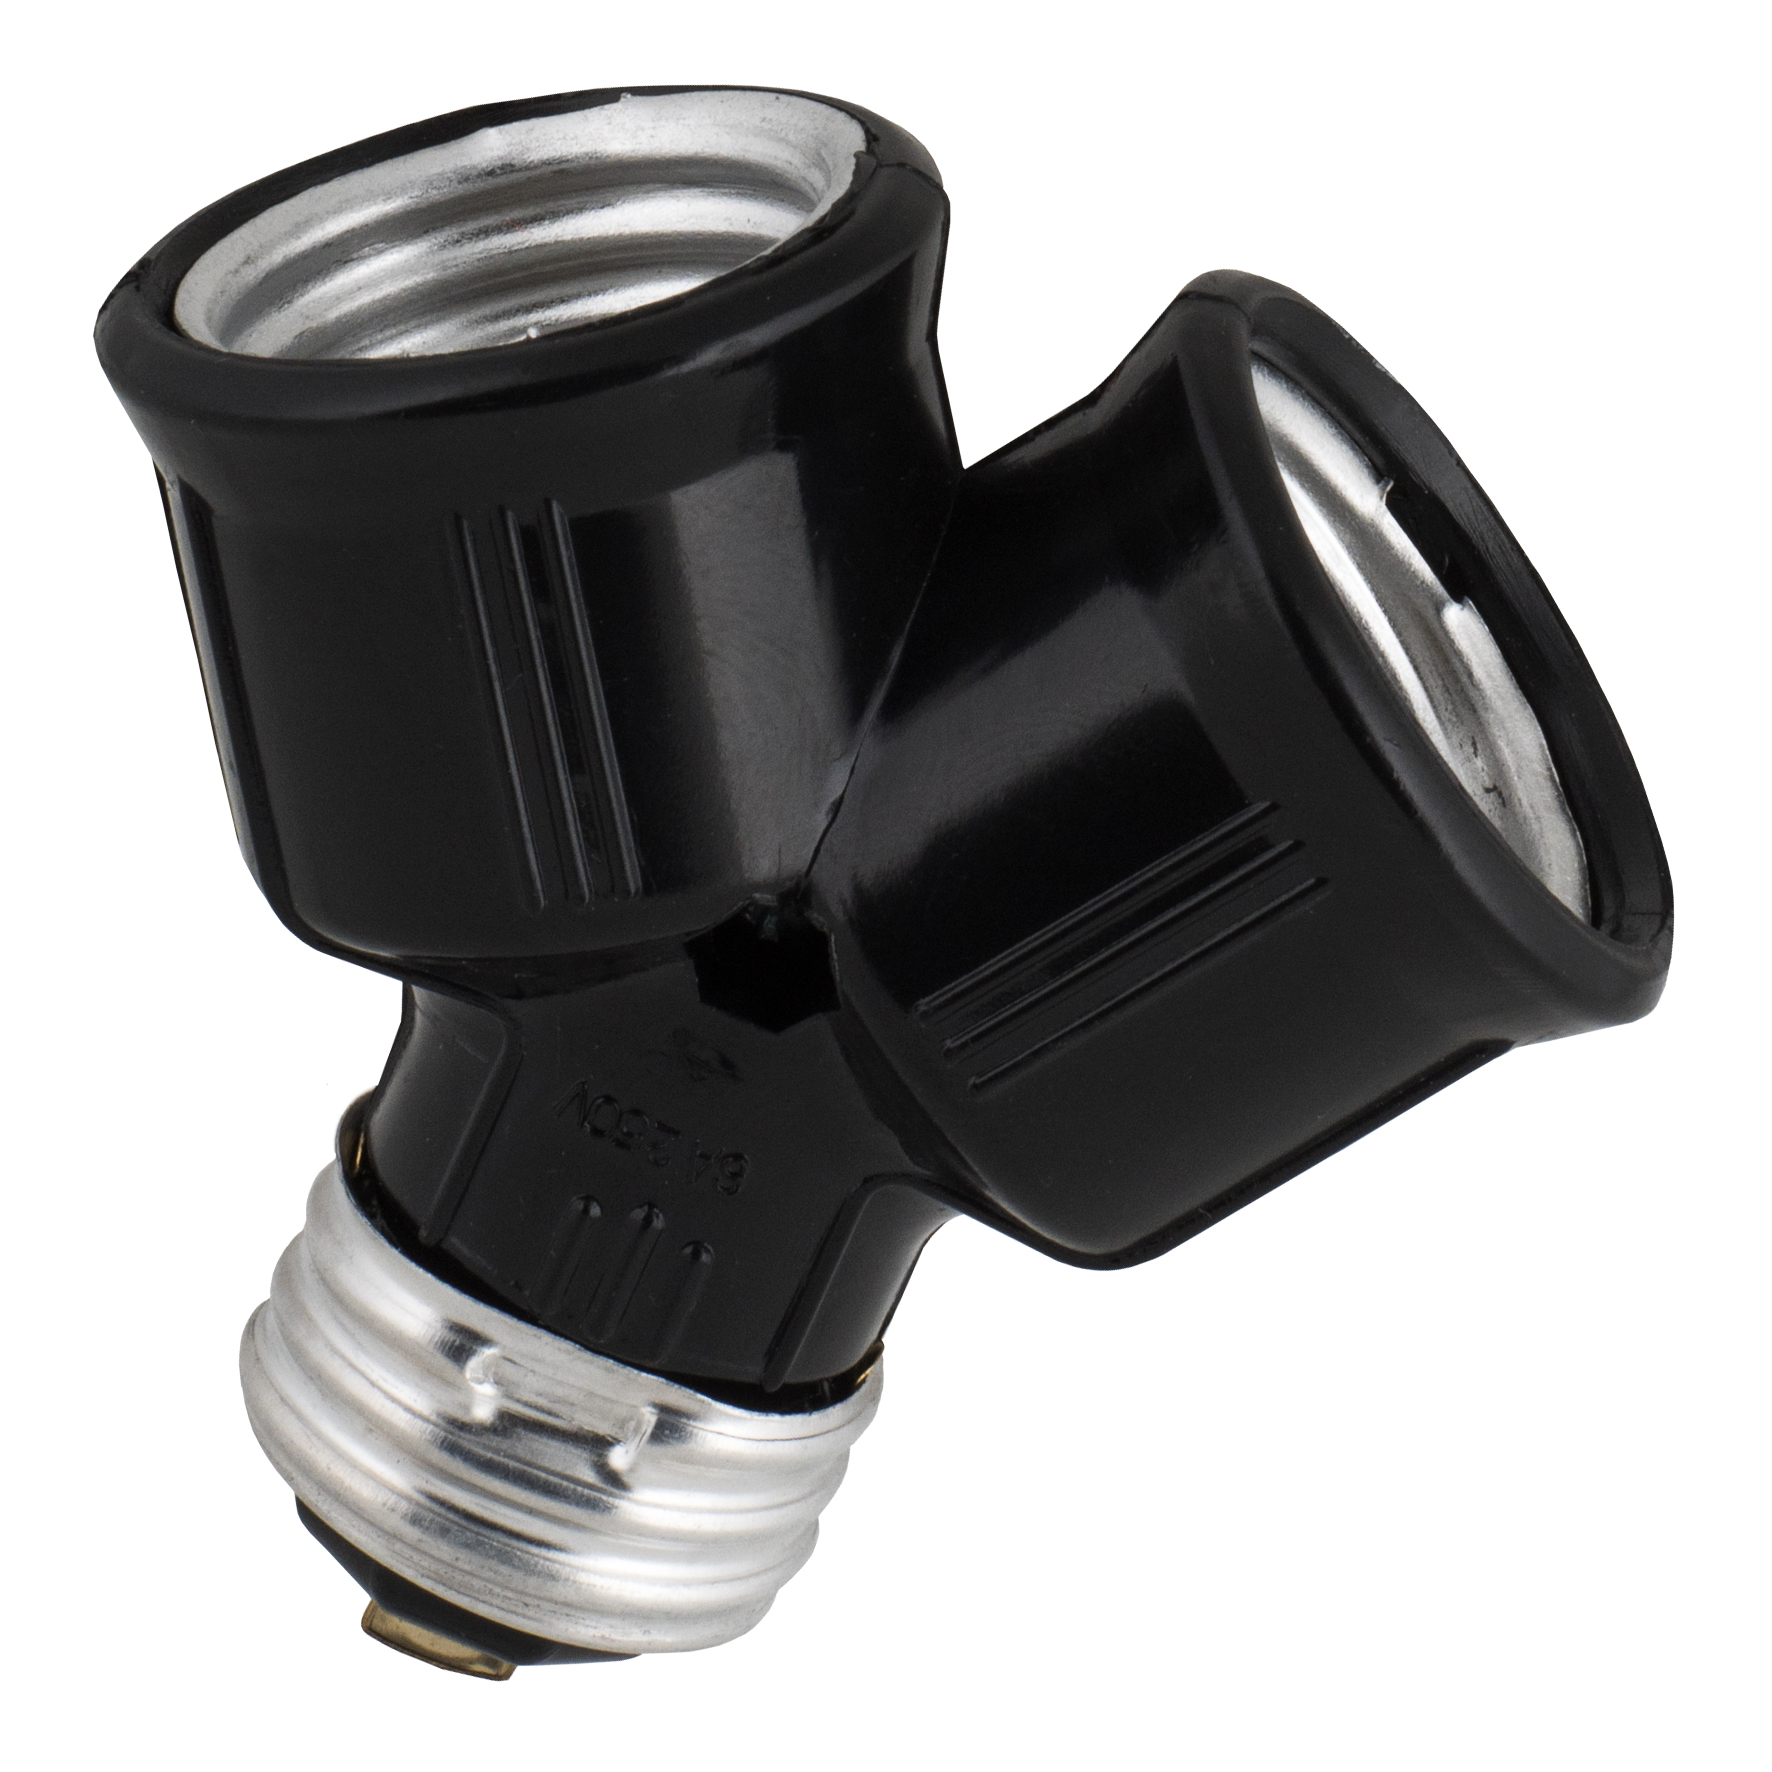 BWLEANSY E27 Lampenfassung mit Clip, Lampenfassung mit Flexibel